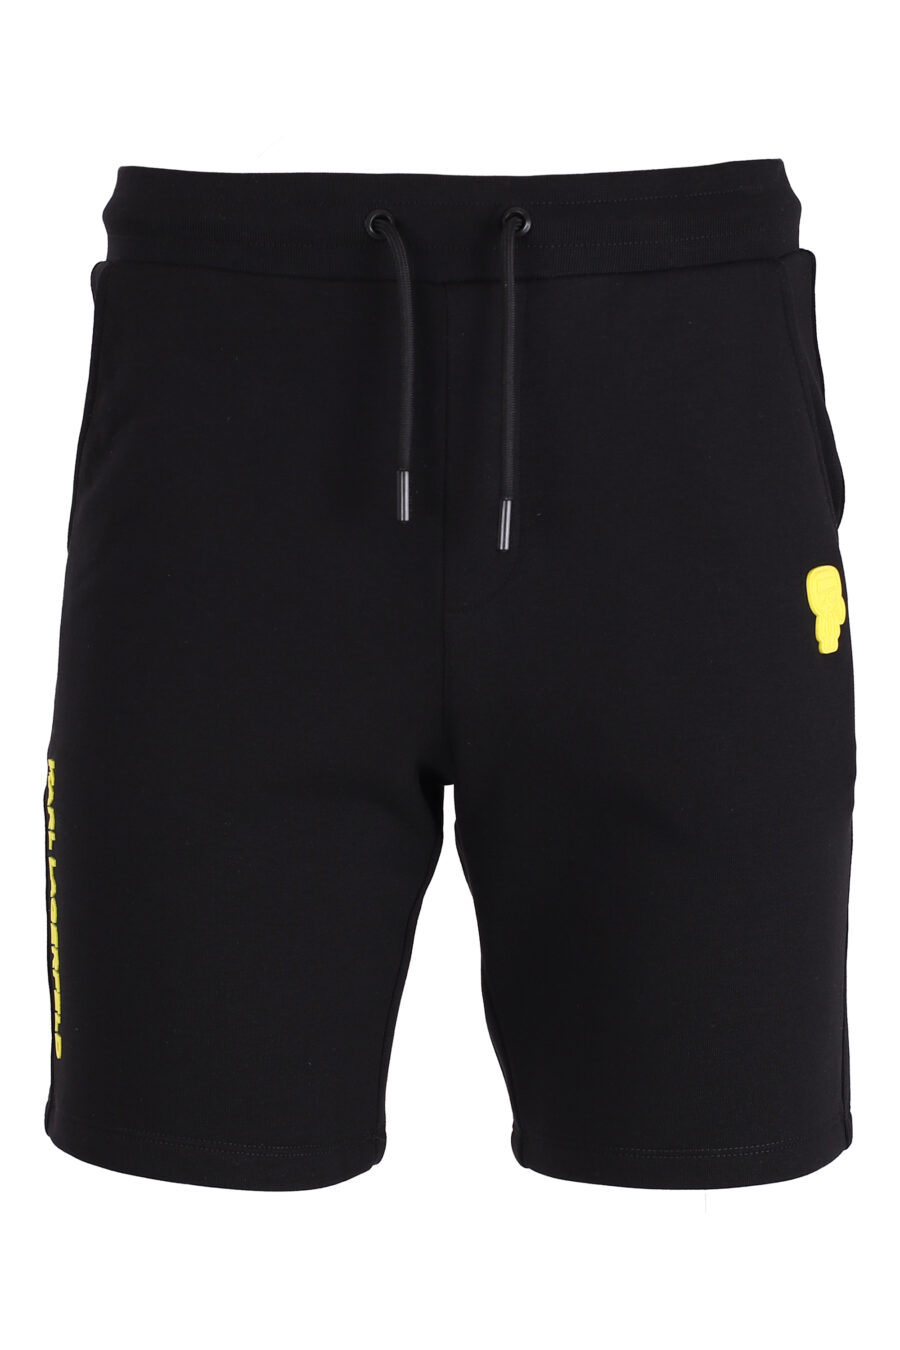 Pantalón corto de chandal negro con logo amarillo - IMG 4373